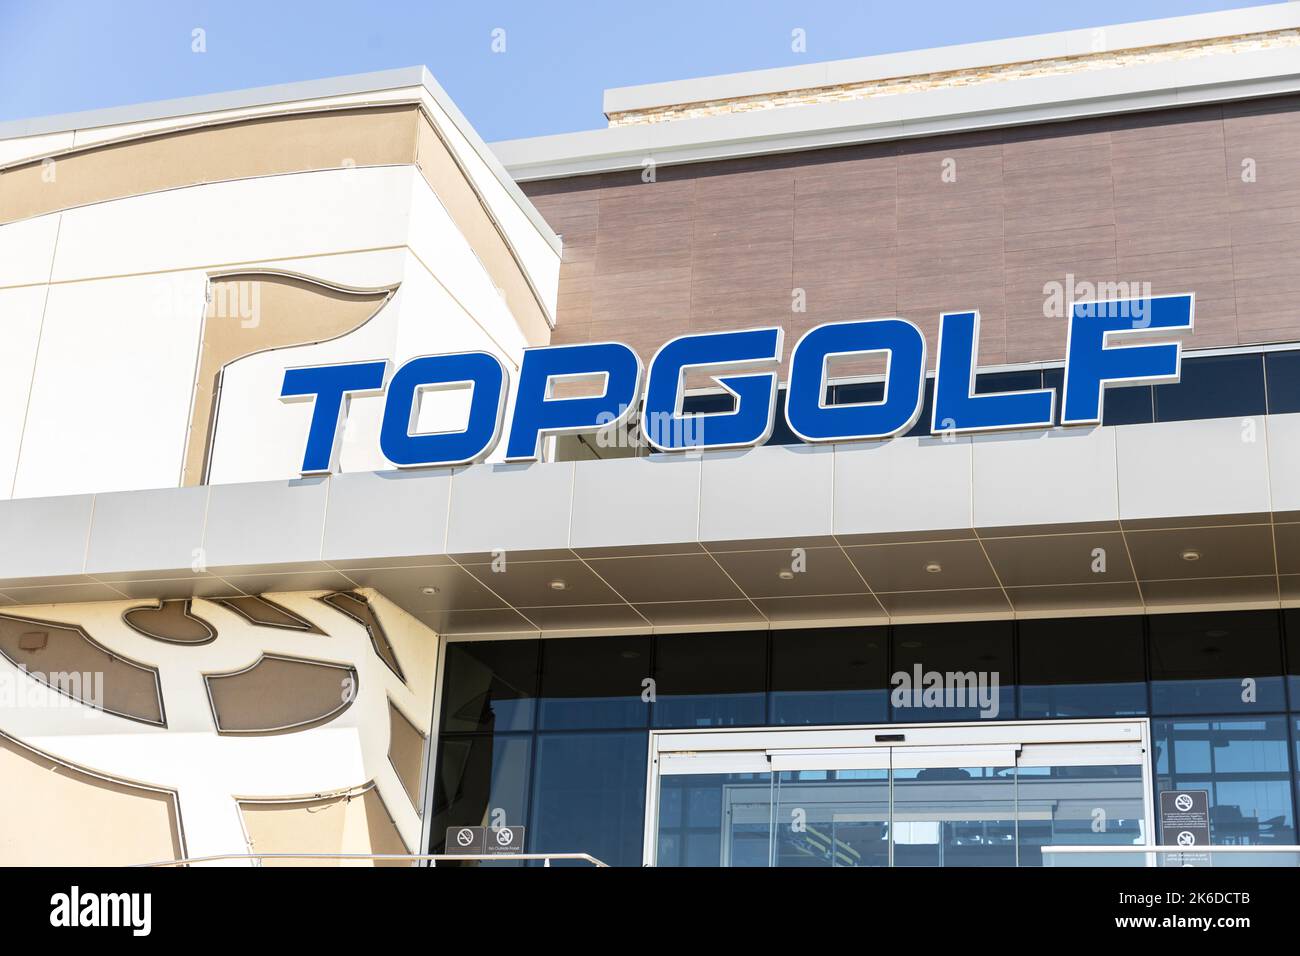 Topgolf verfügt über drei Etagen mit Driving Range Bays und ist ein unterhaltsamer Unterhaltungskomplex für alle Altersgruppen. Stockfoto